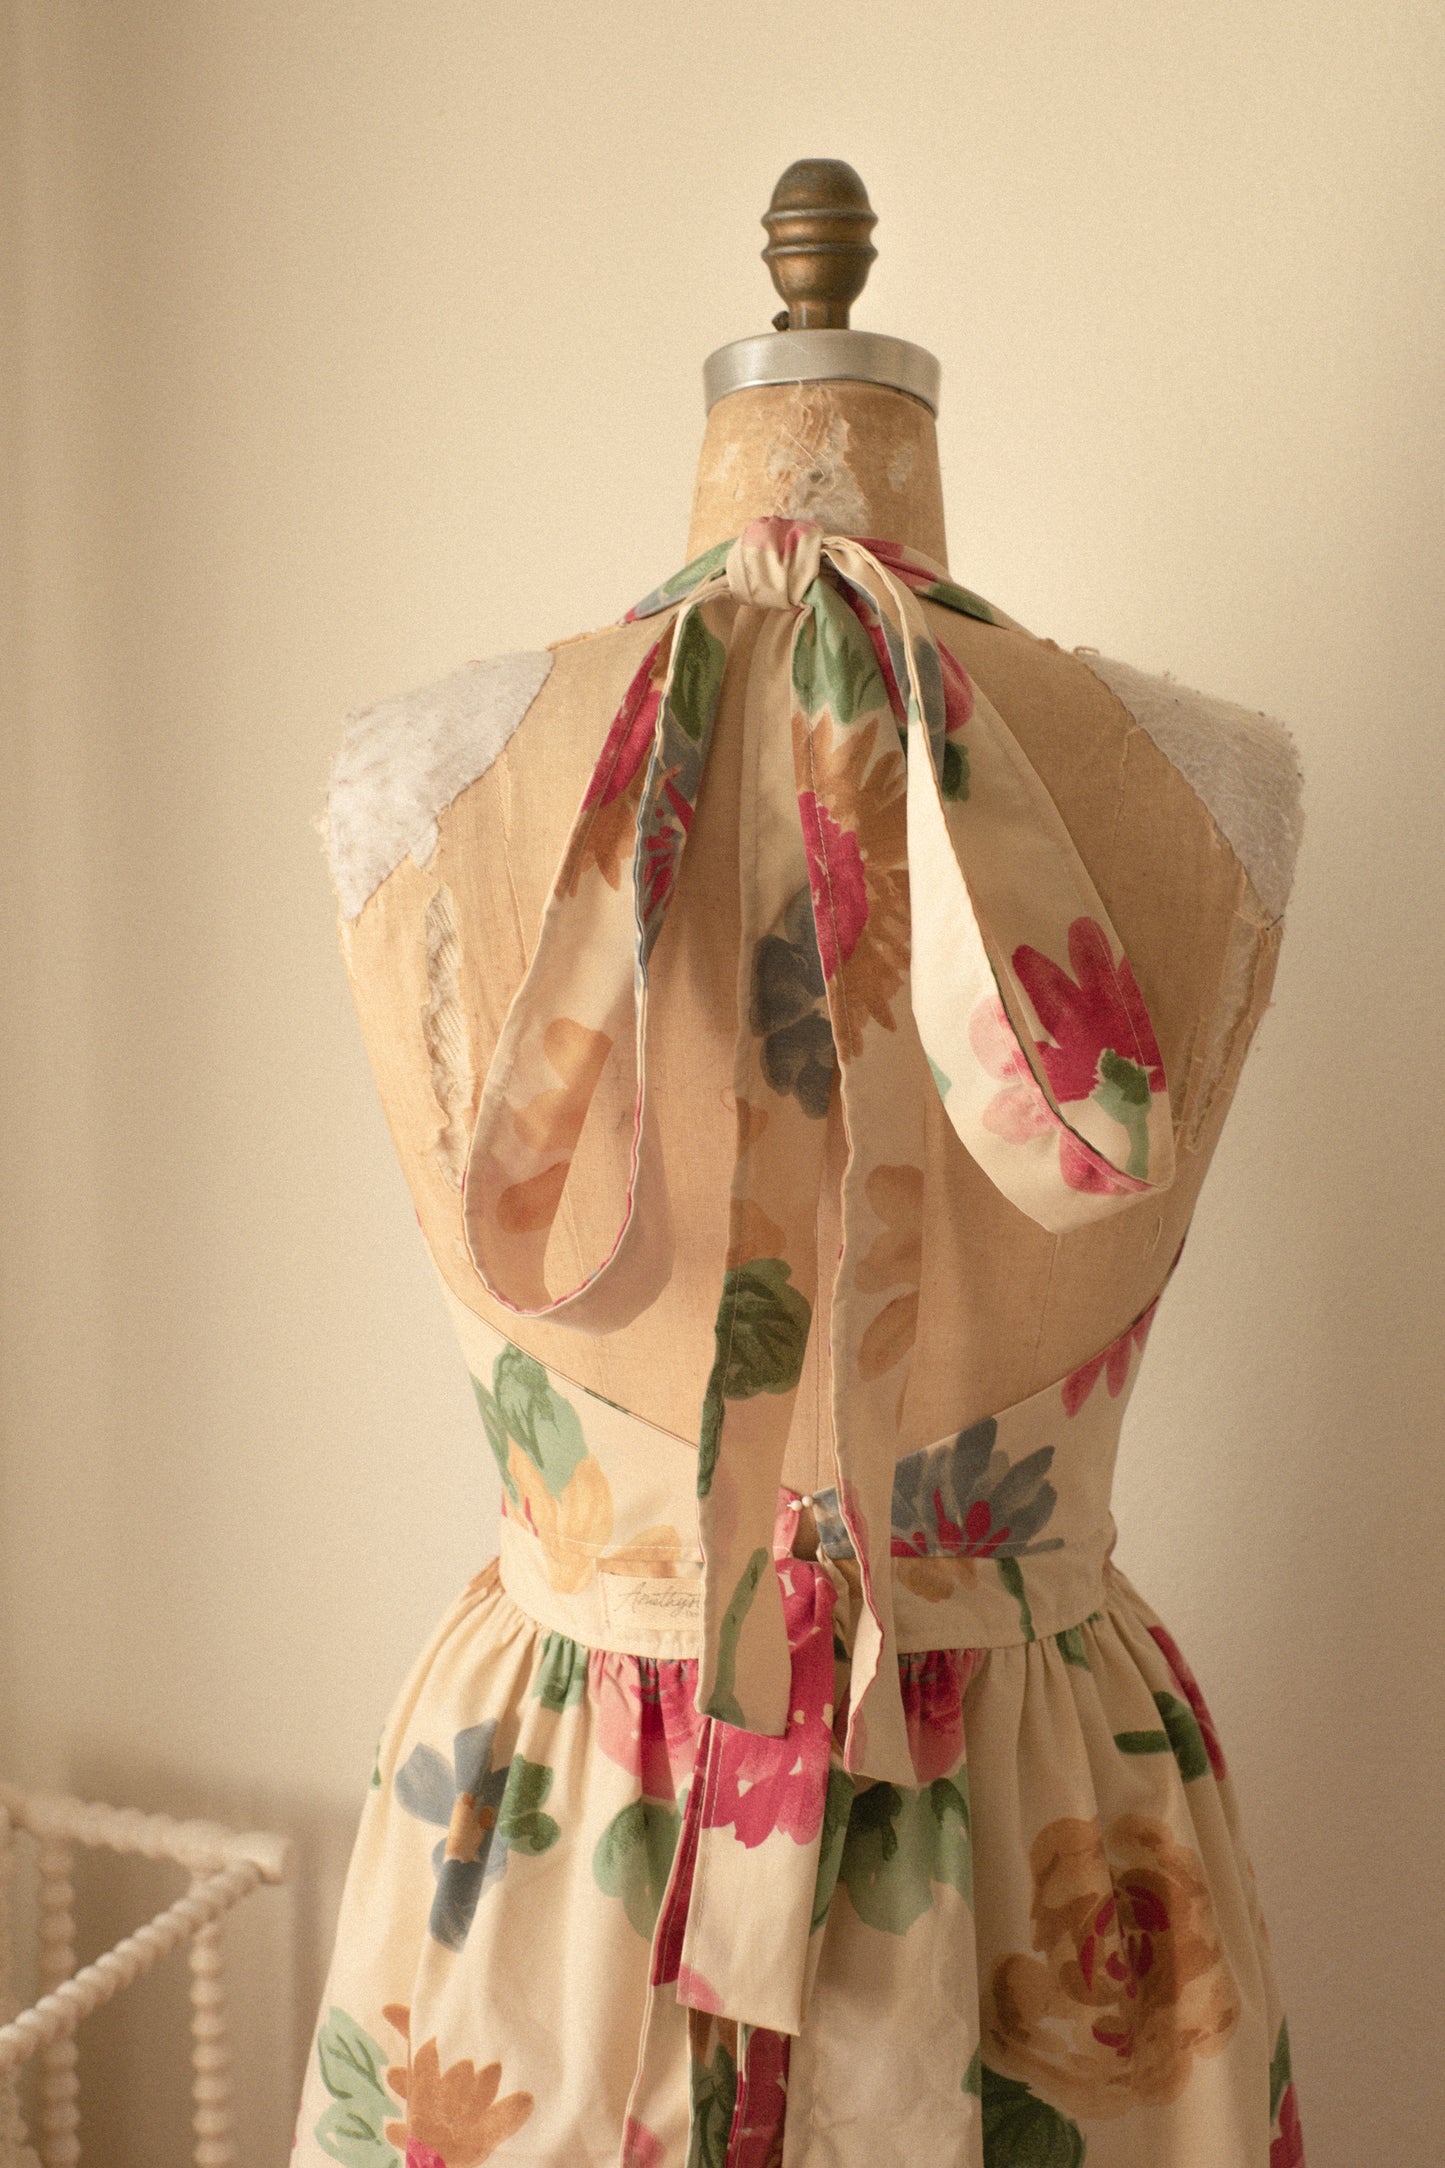 Handmade vintage floral apron set - She loves me